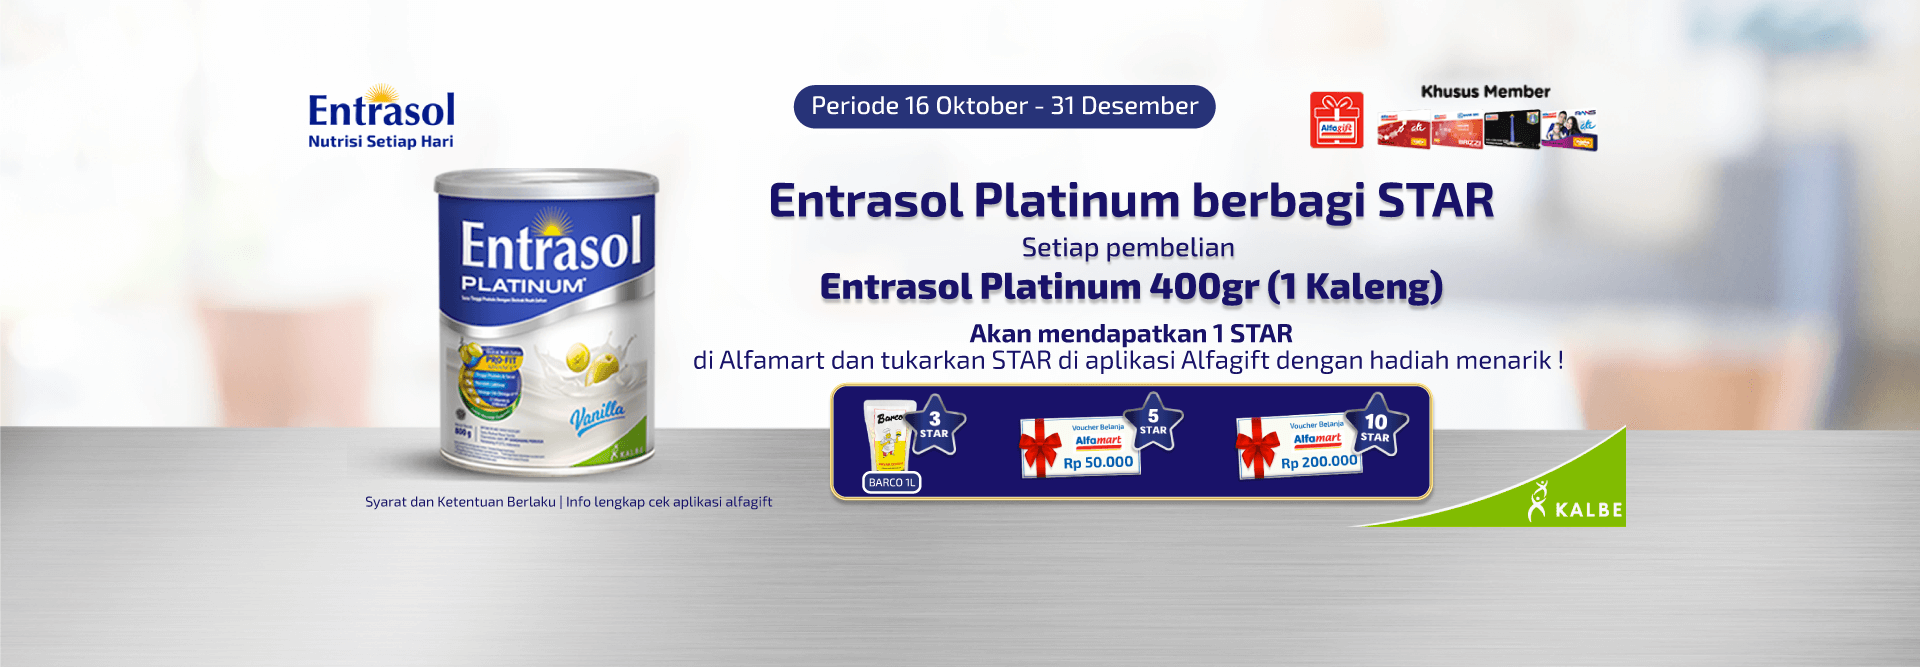 Promo Program member Alfamart - Entrasol Platinum Berbagi Star Alfamart